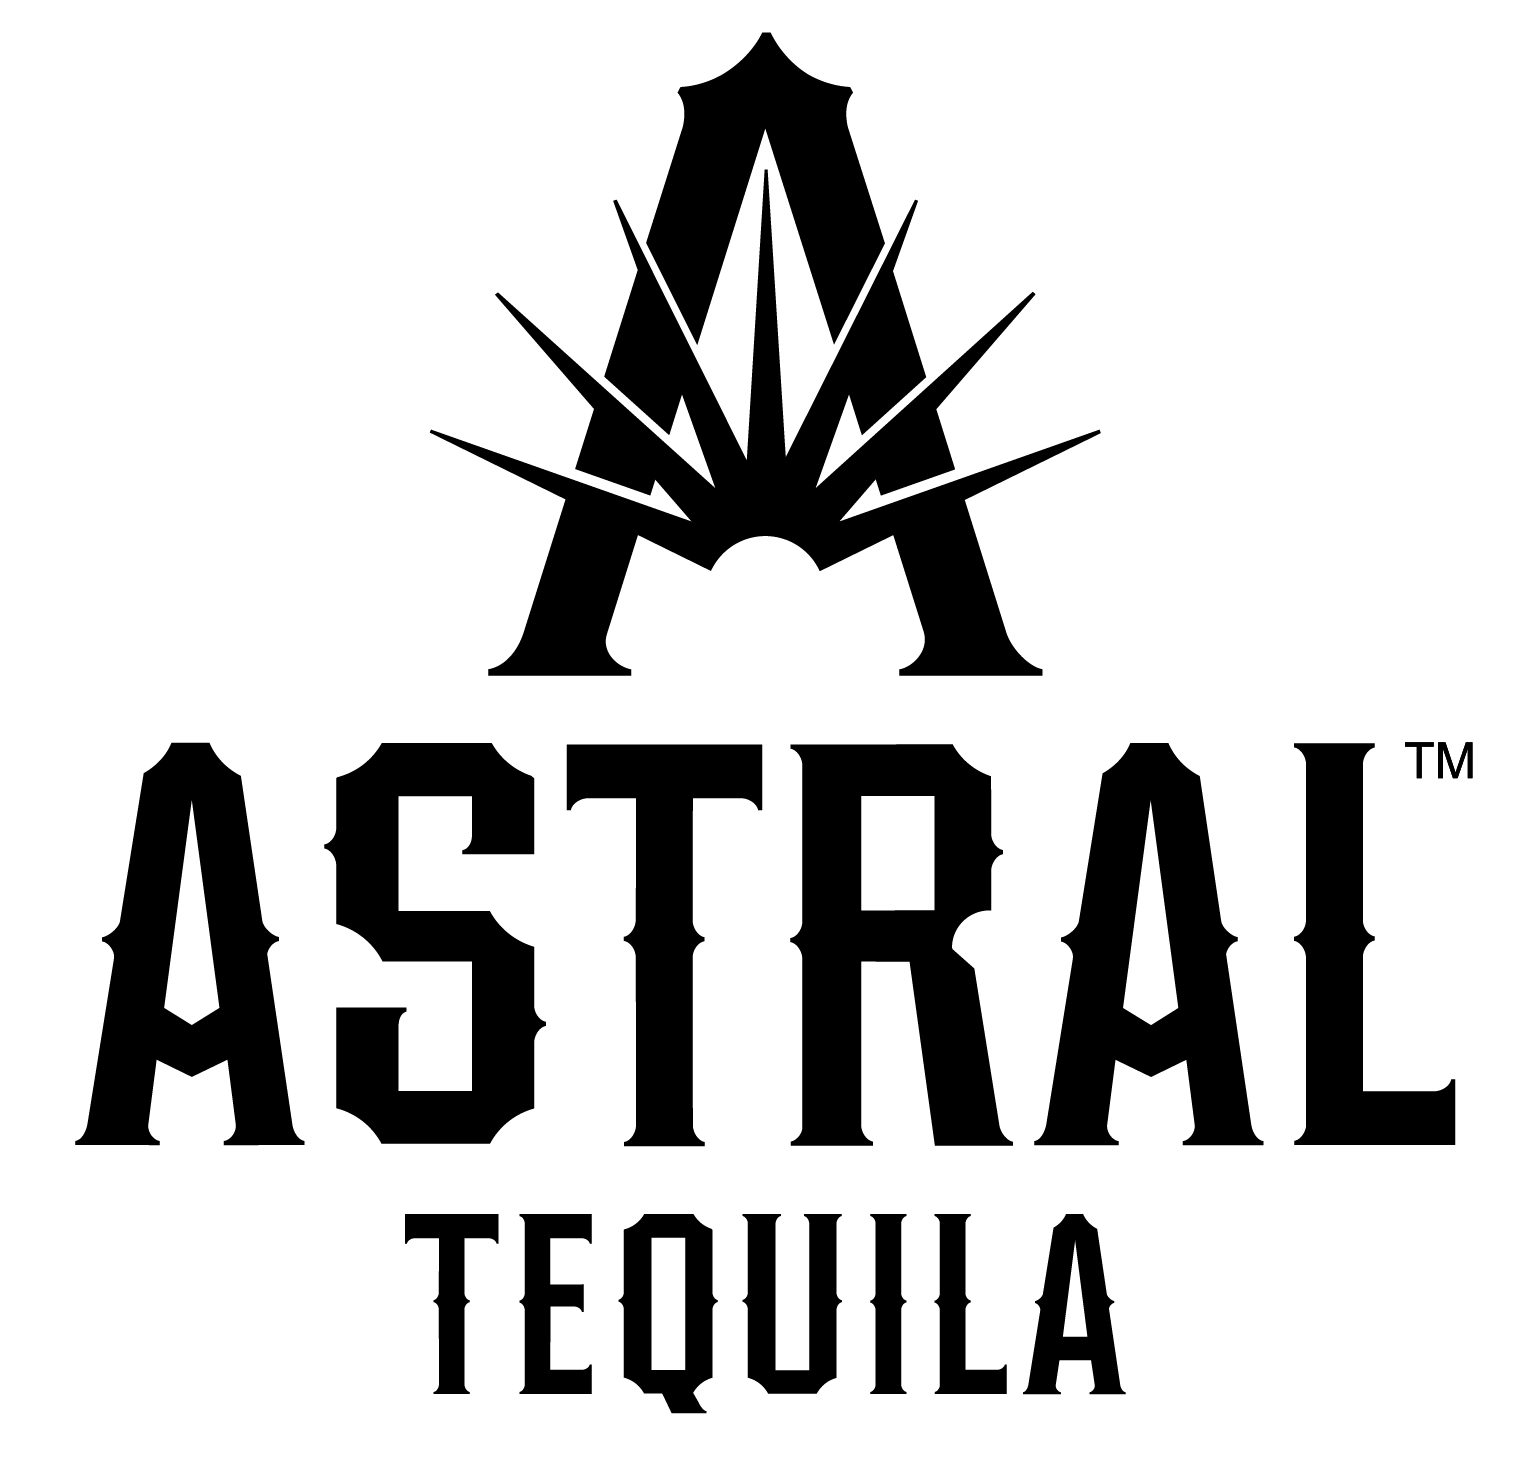 Astral_Apr22 logo